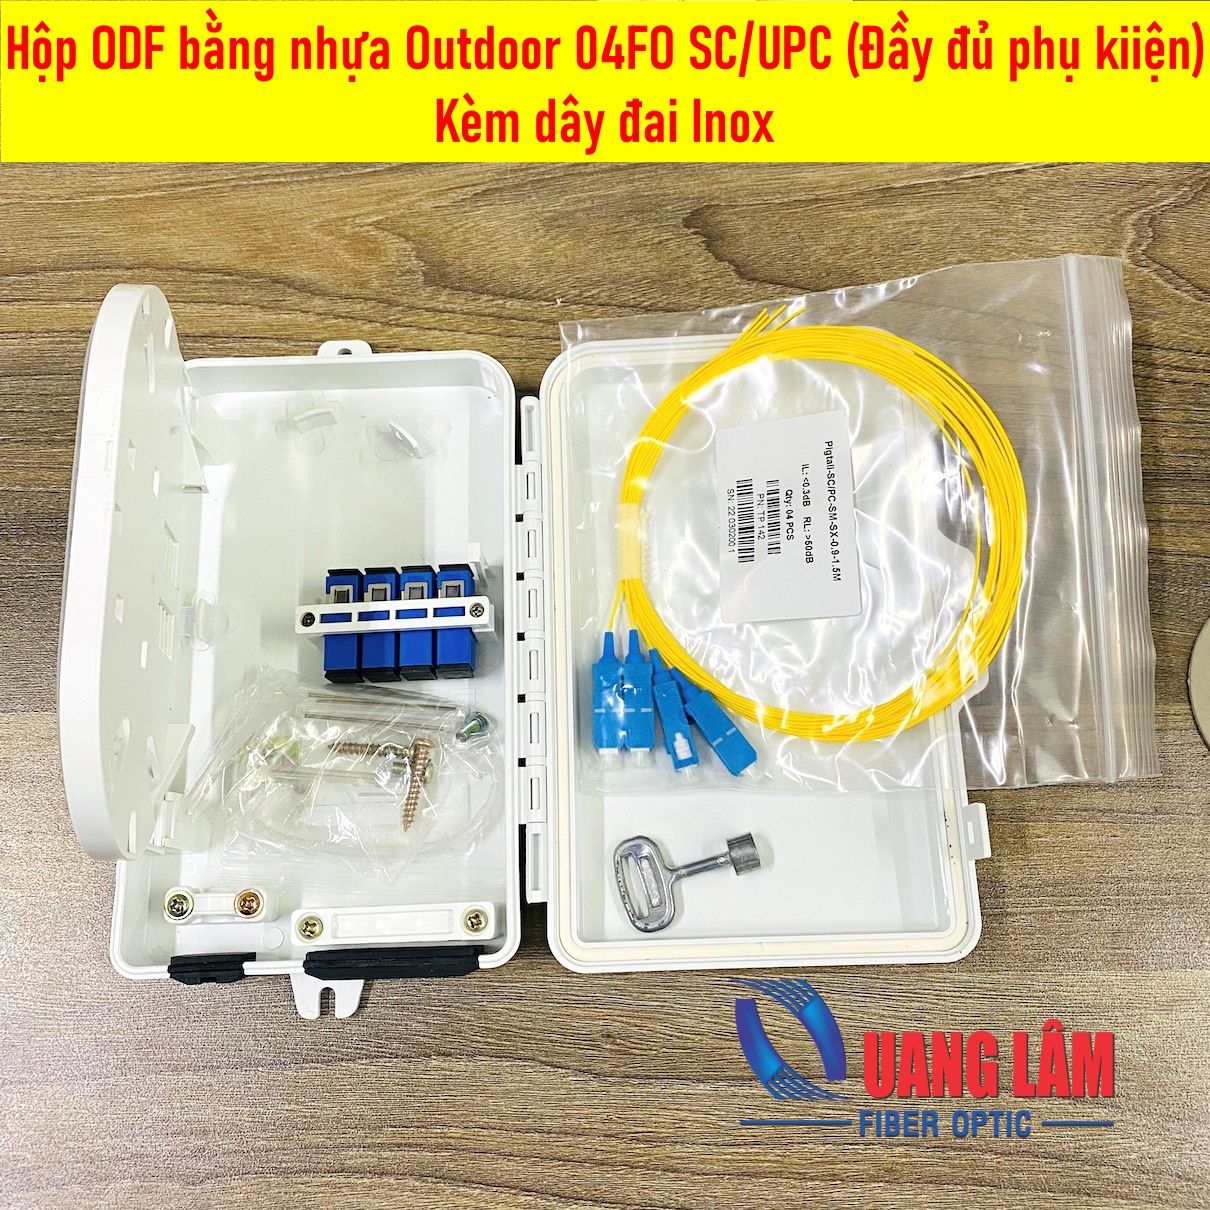 Hộp ODF bằng nhựa outdoor 04FO SC/UPC ((4 Adapter SC/UPC, 4 ống co nhiệt, 4 dây nối quang đơn mốt SC/UPC dài 1.5m, phi 0.9mm)) - Kèm dây đai Inox